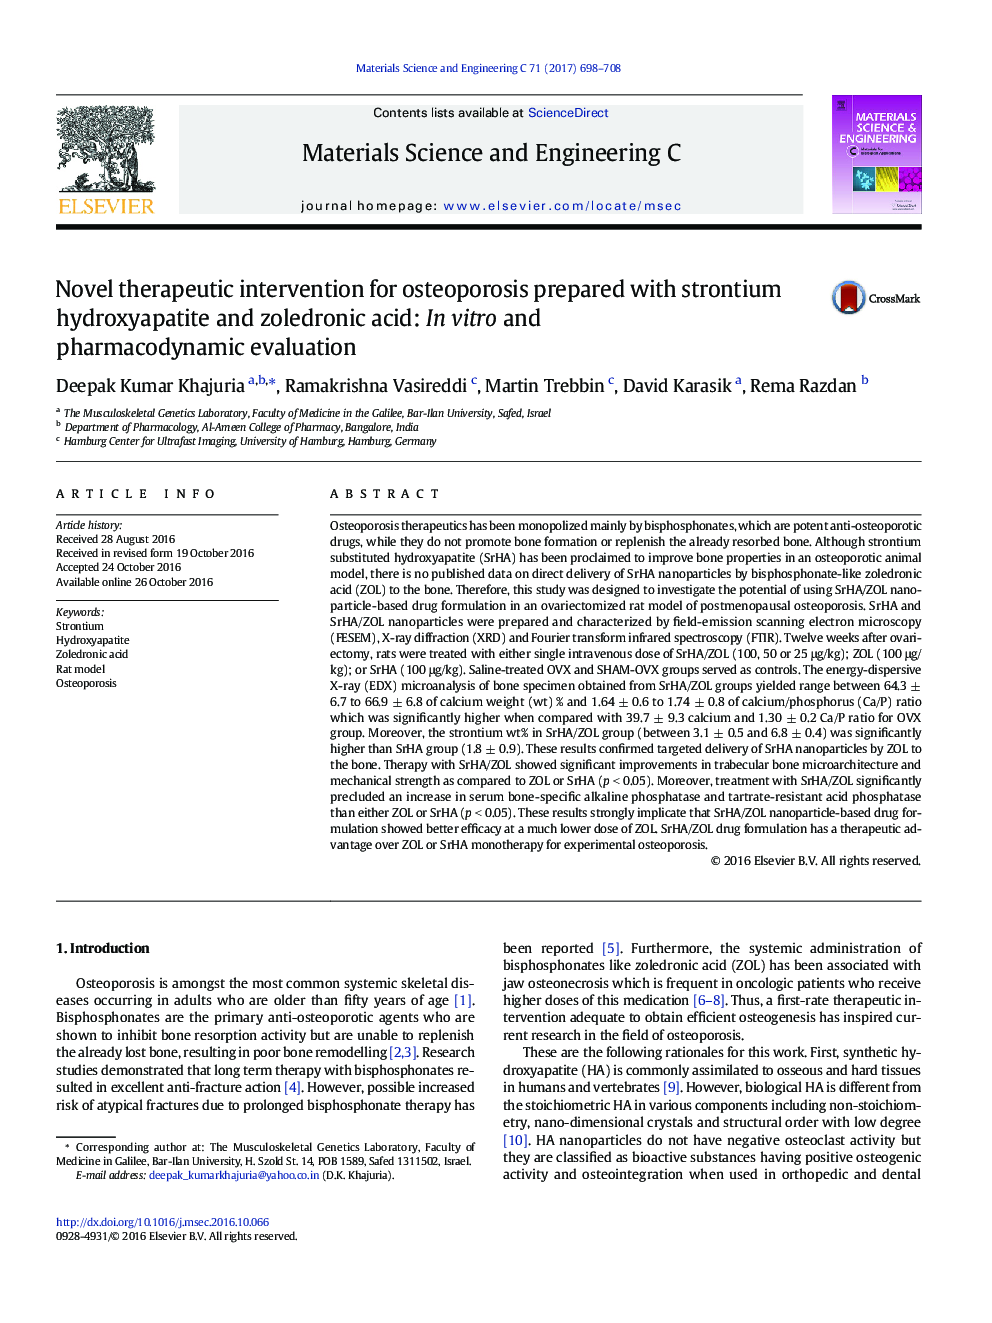 مداخله درمانی روان برای استئوپروز تهیه شده با هیدروکسی آپاتیت استرونتیوم و زولدرونیک اسید: ارزیابی آزمایشگاهی و دارویی 